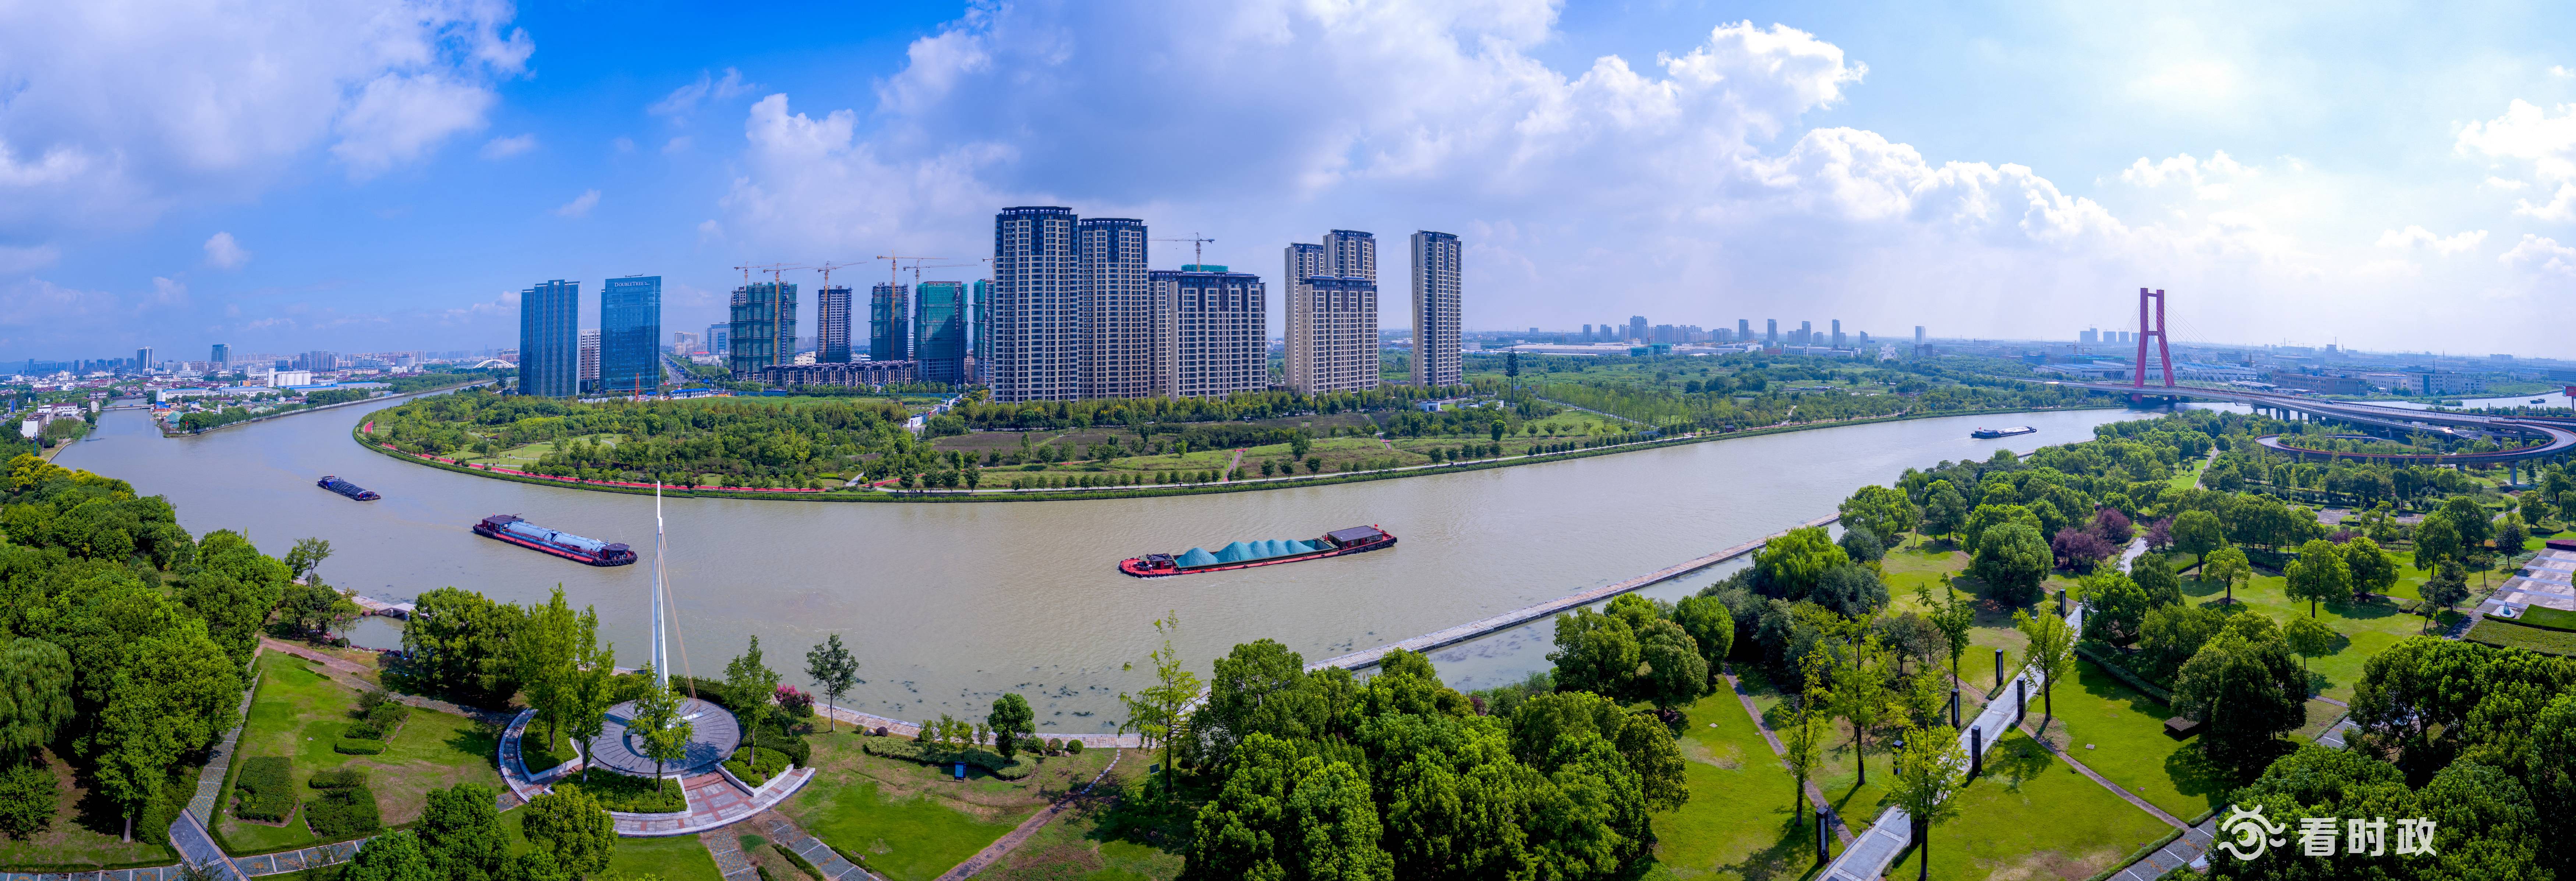 建设最精彩一段 苏州将打造京杭大运河运河十景